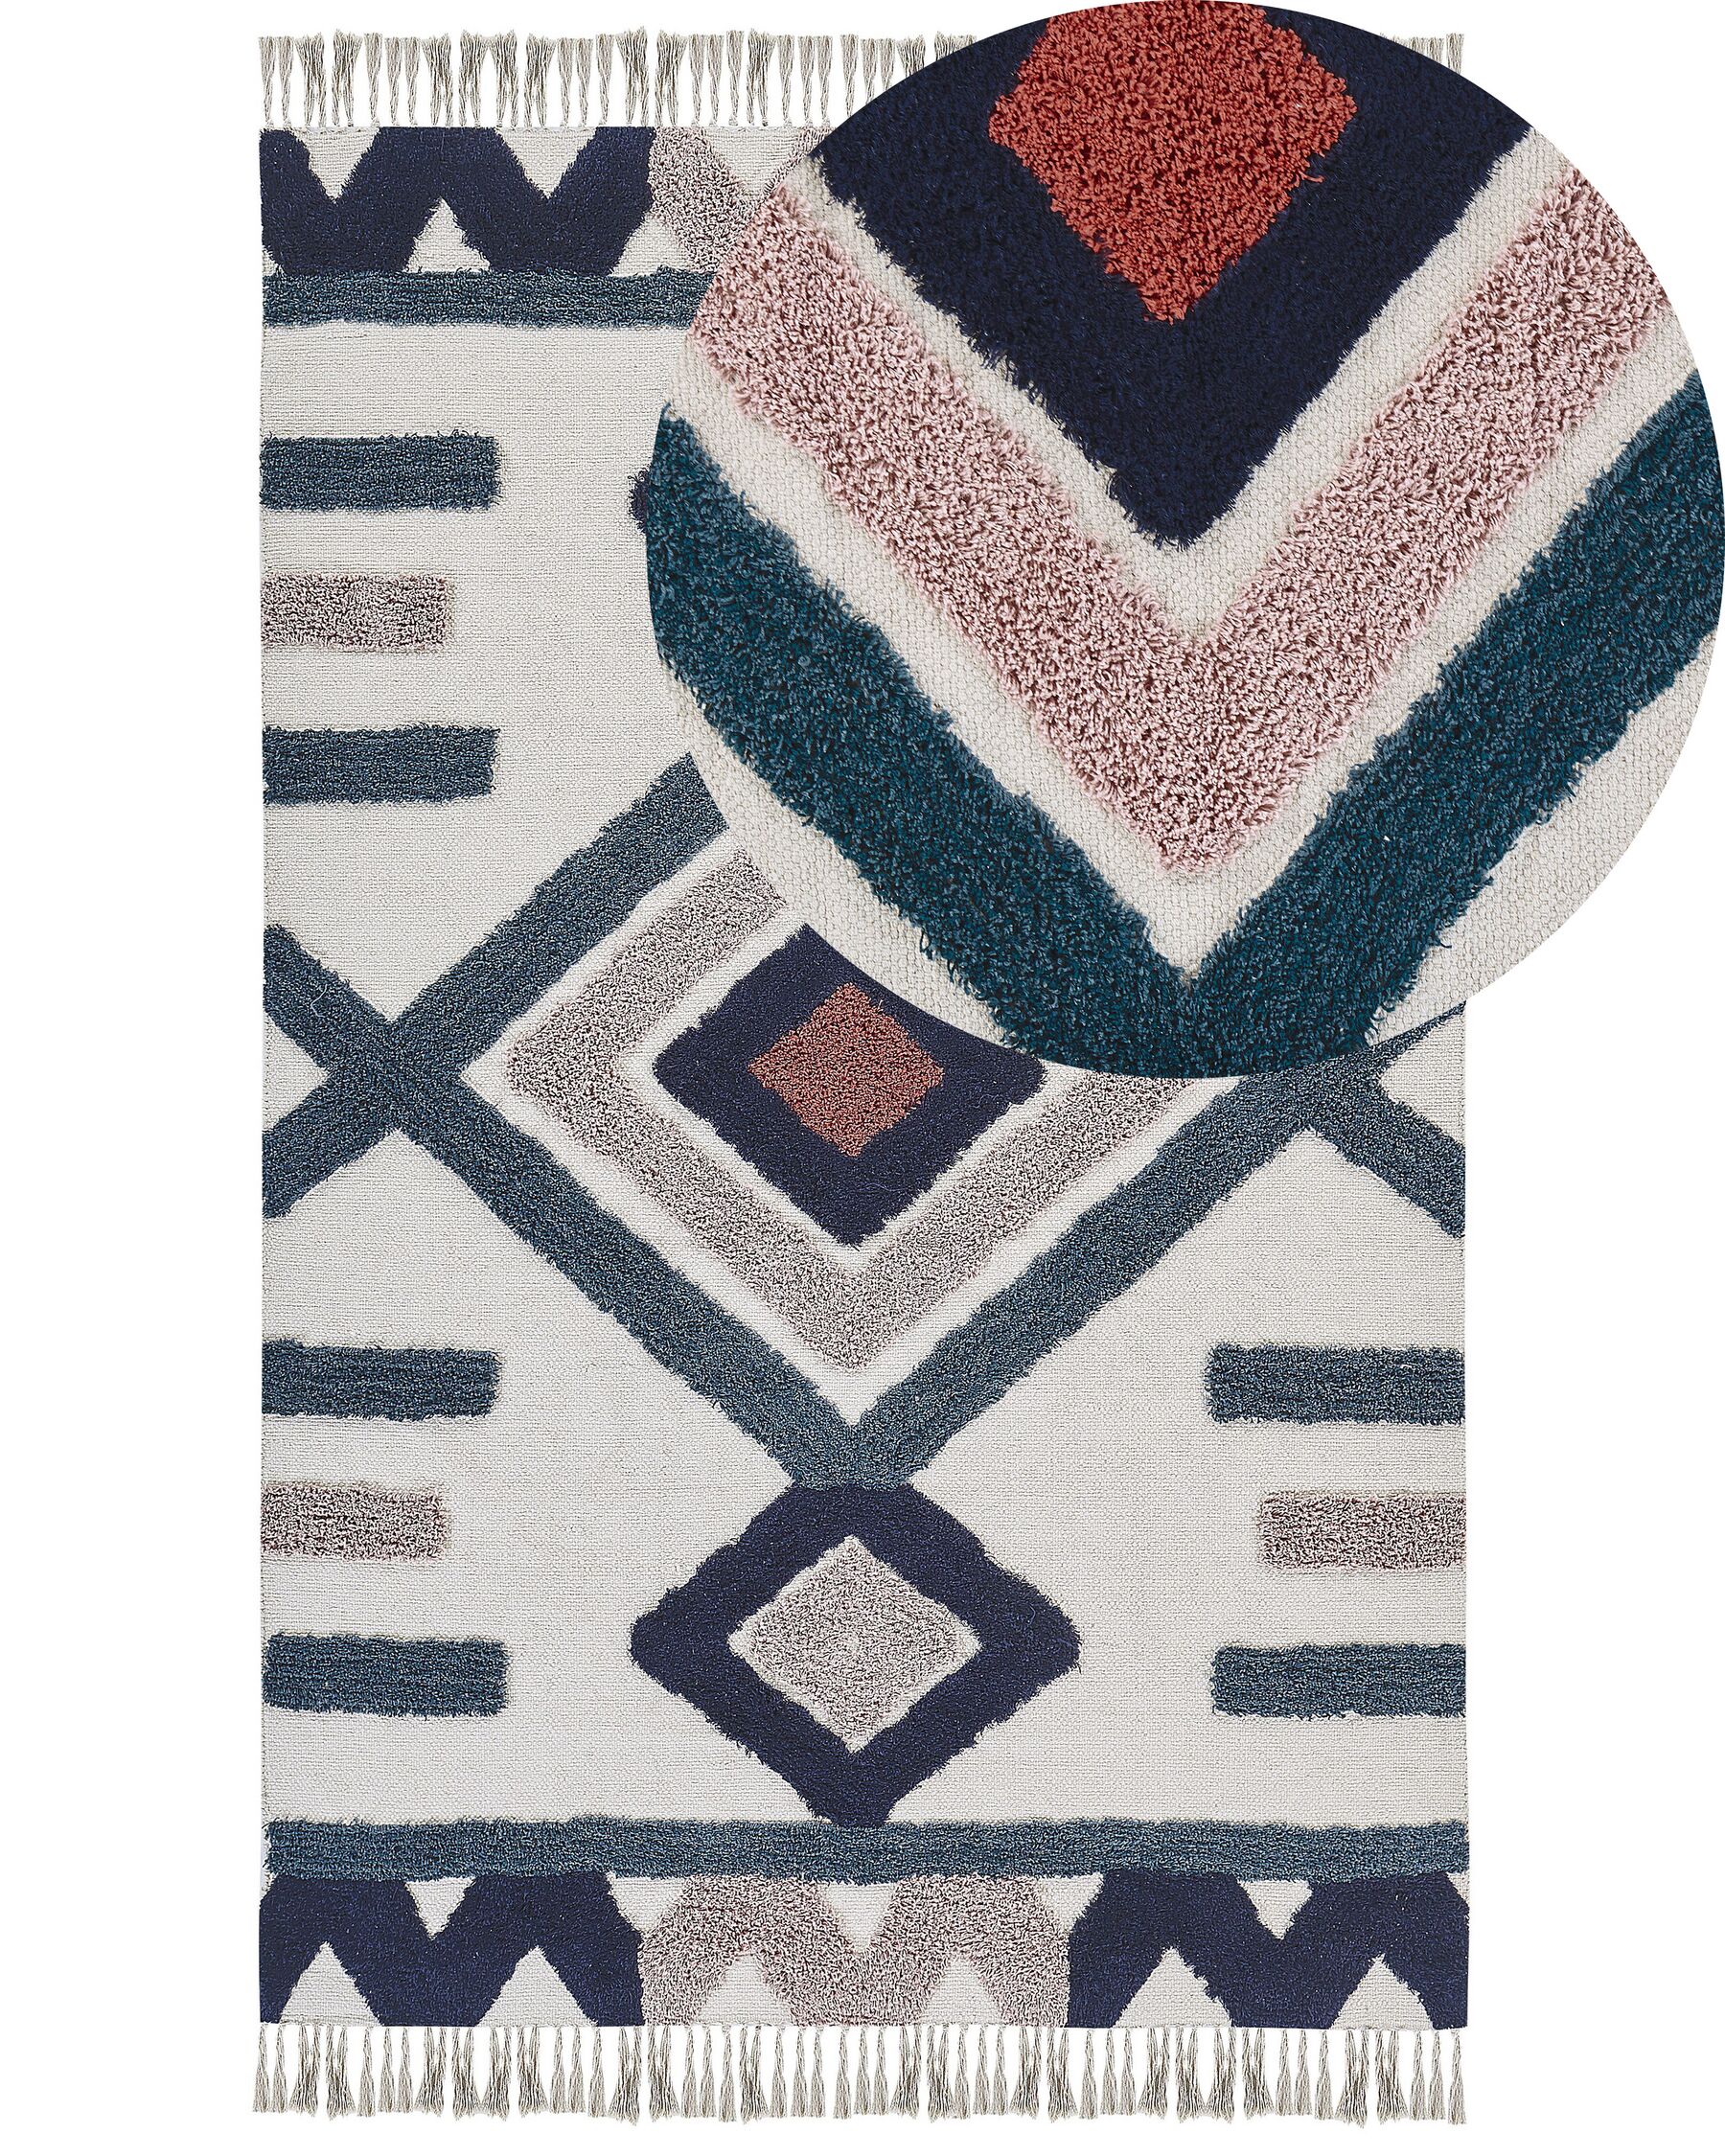 Teppich Baumwolle mehrfarbig 140 x 200 cm geometrisches Muster Fransen Kurzflor KOZLU_816970